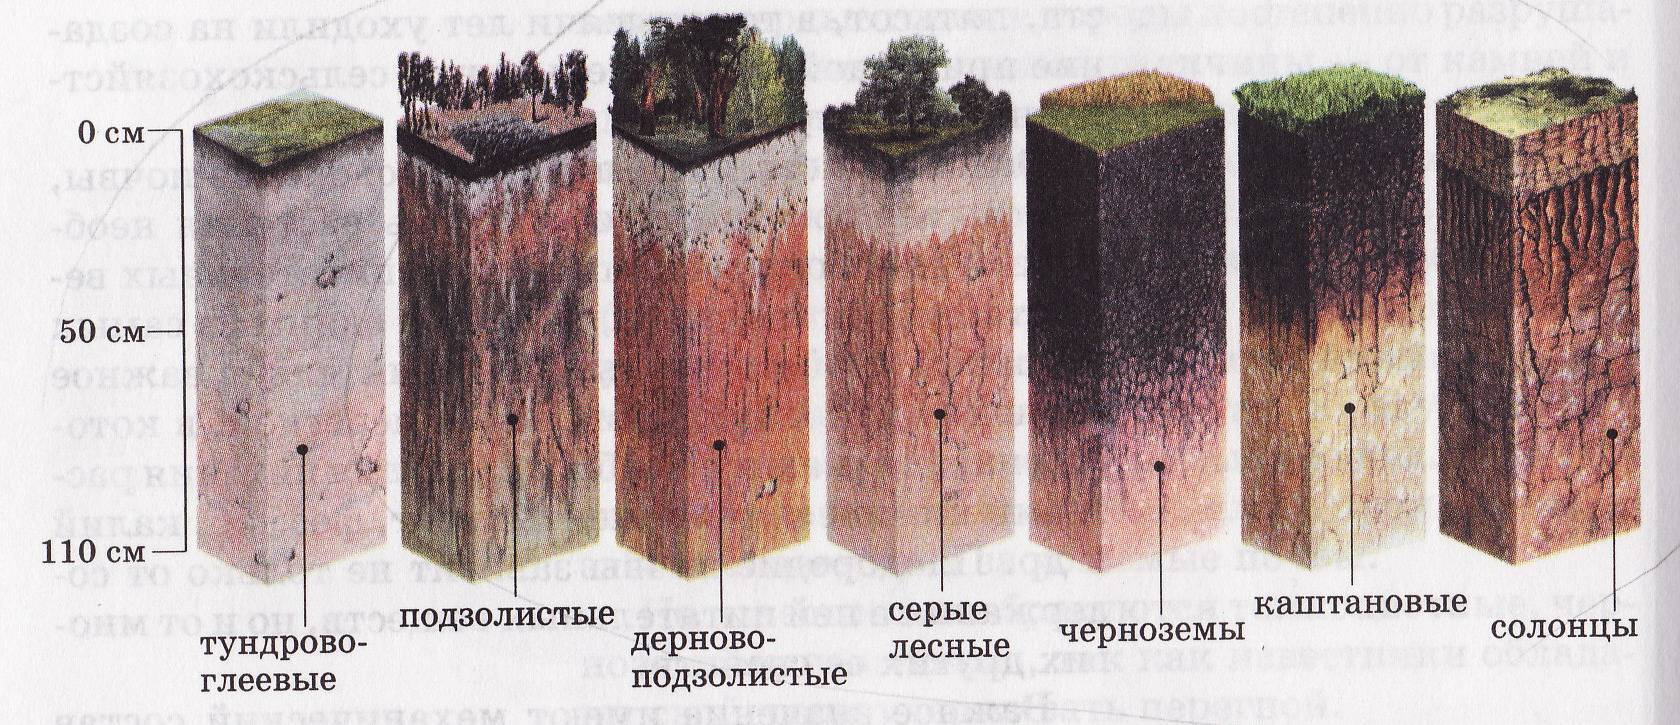 Подзолистые почвы азональные. Дерново-подзолистая, серая Лесная, чернозем почвенные горизонты. Подзолистая почва профиль почвы. Пахотные дерново-подзолистые почвы профиль. Почвенный профиль подзолистых почв.